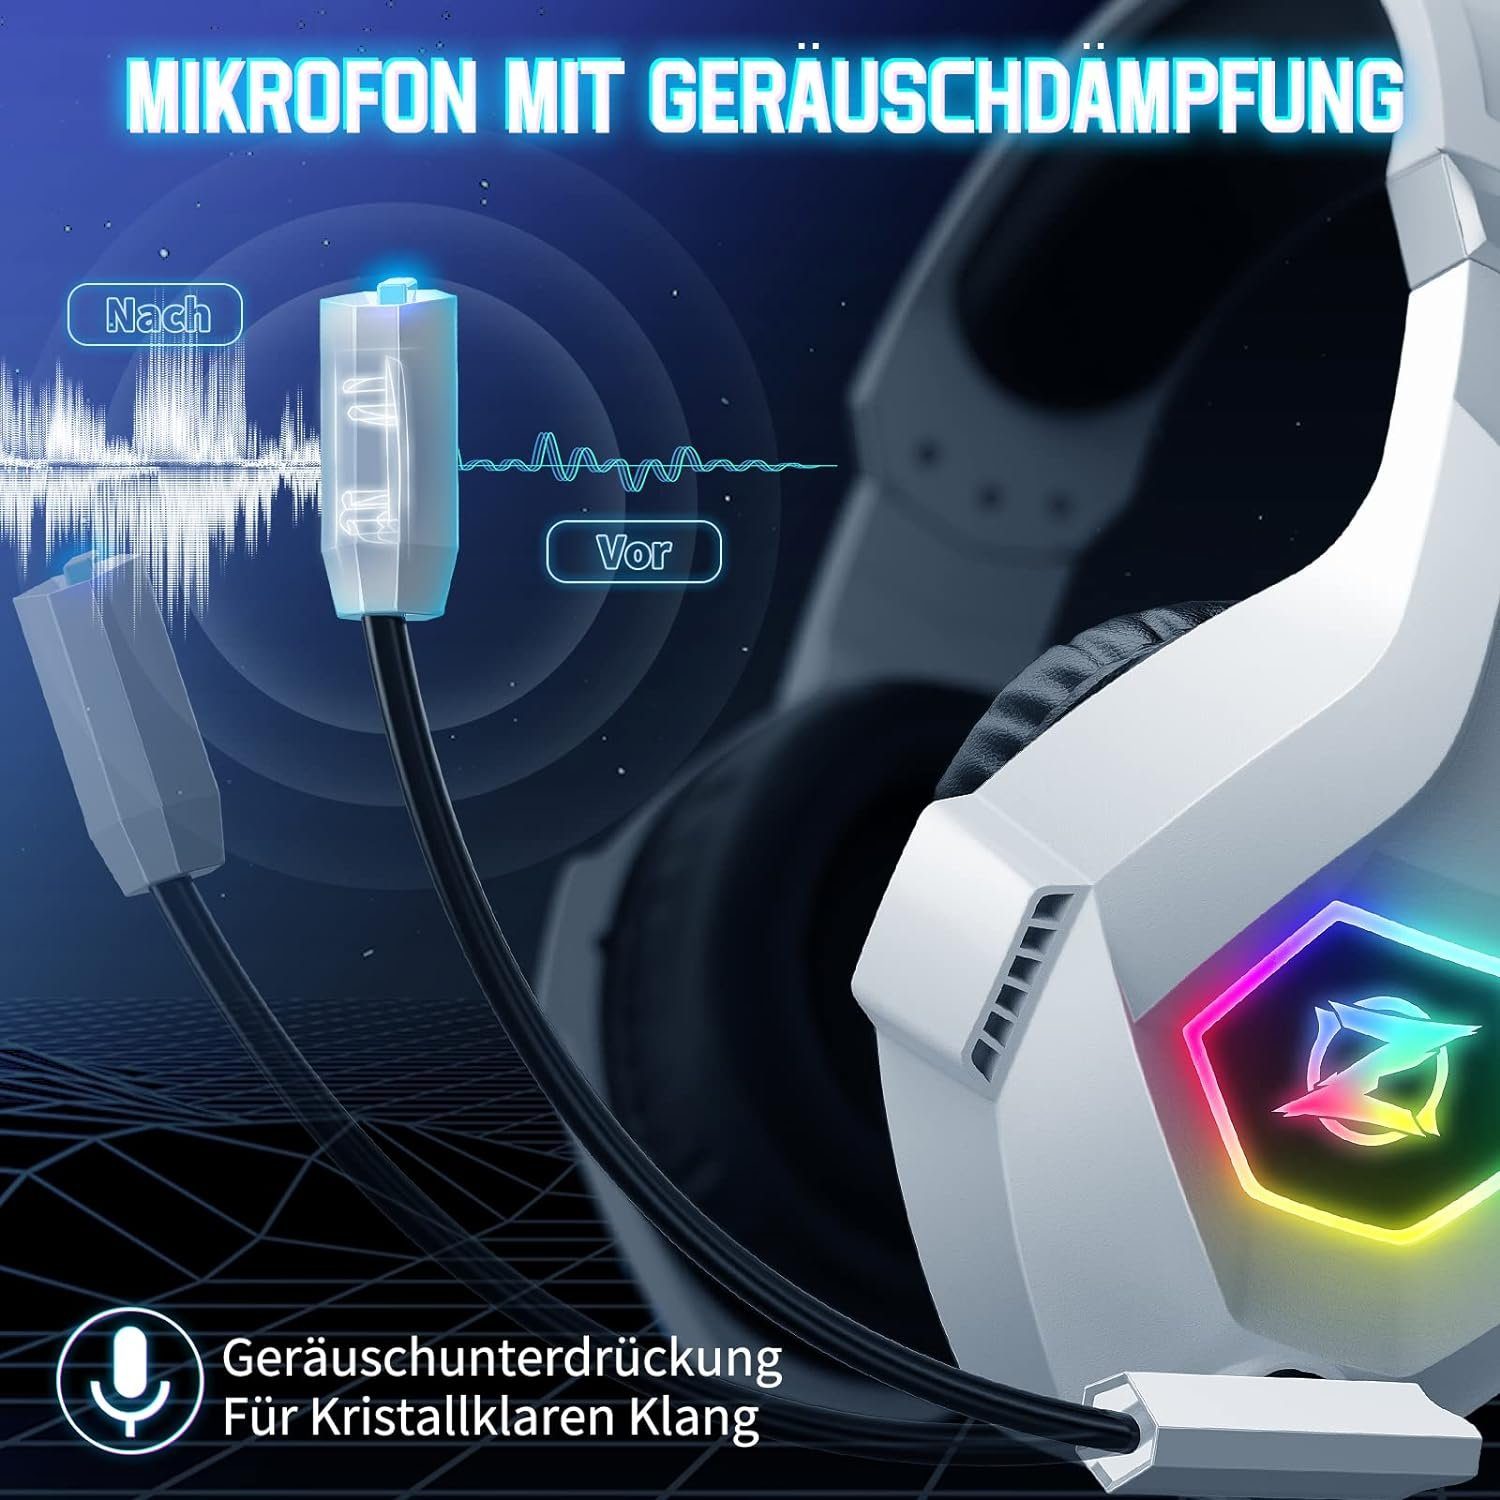 3D Sound, Mit ozeino mit Sound Lichter) Gaming-Headset RGB Cancelling Headset Noise (3D Surround Mikrofon Surround Kabel,